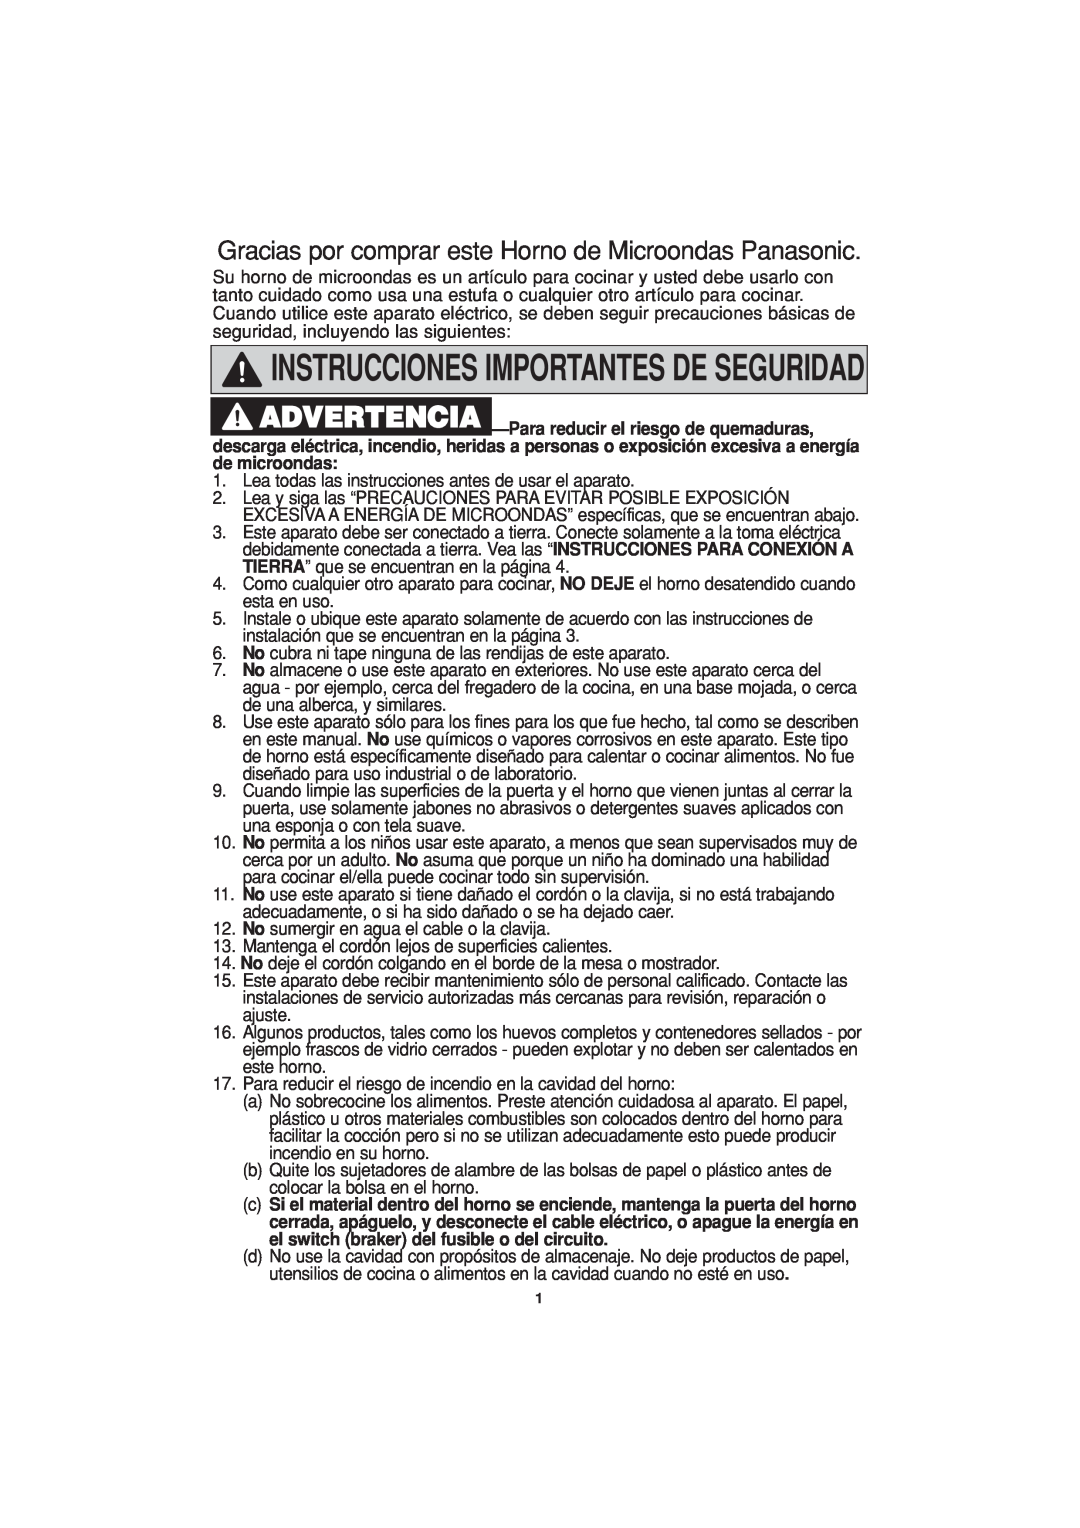 Panasonic NN-H624 operating instructions Instrucciones Importantes De Seguridad 